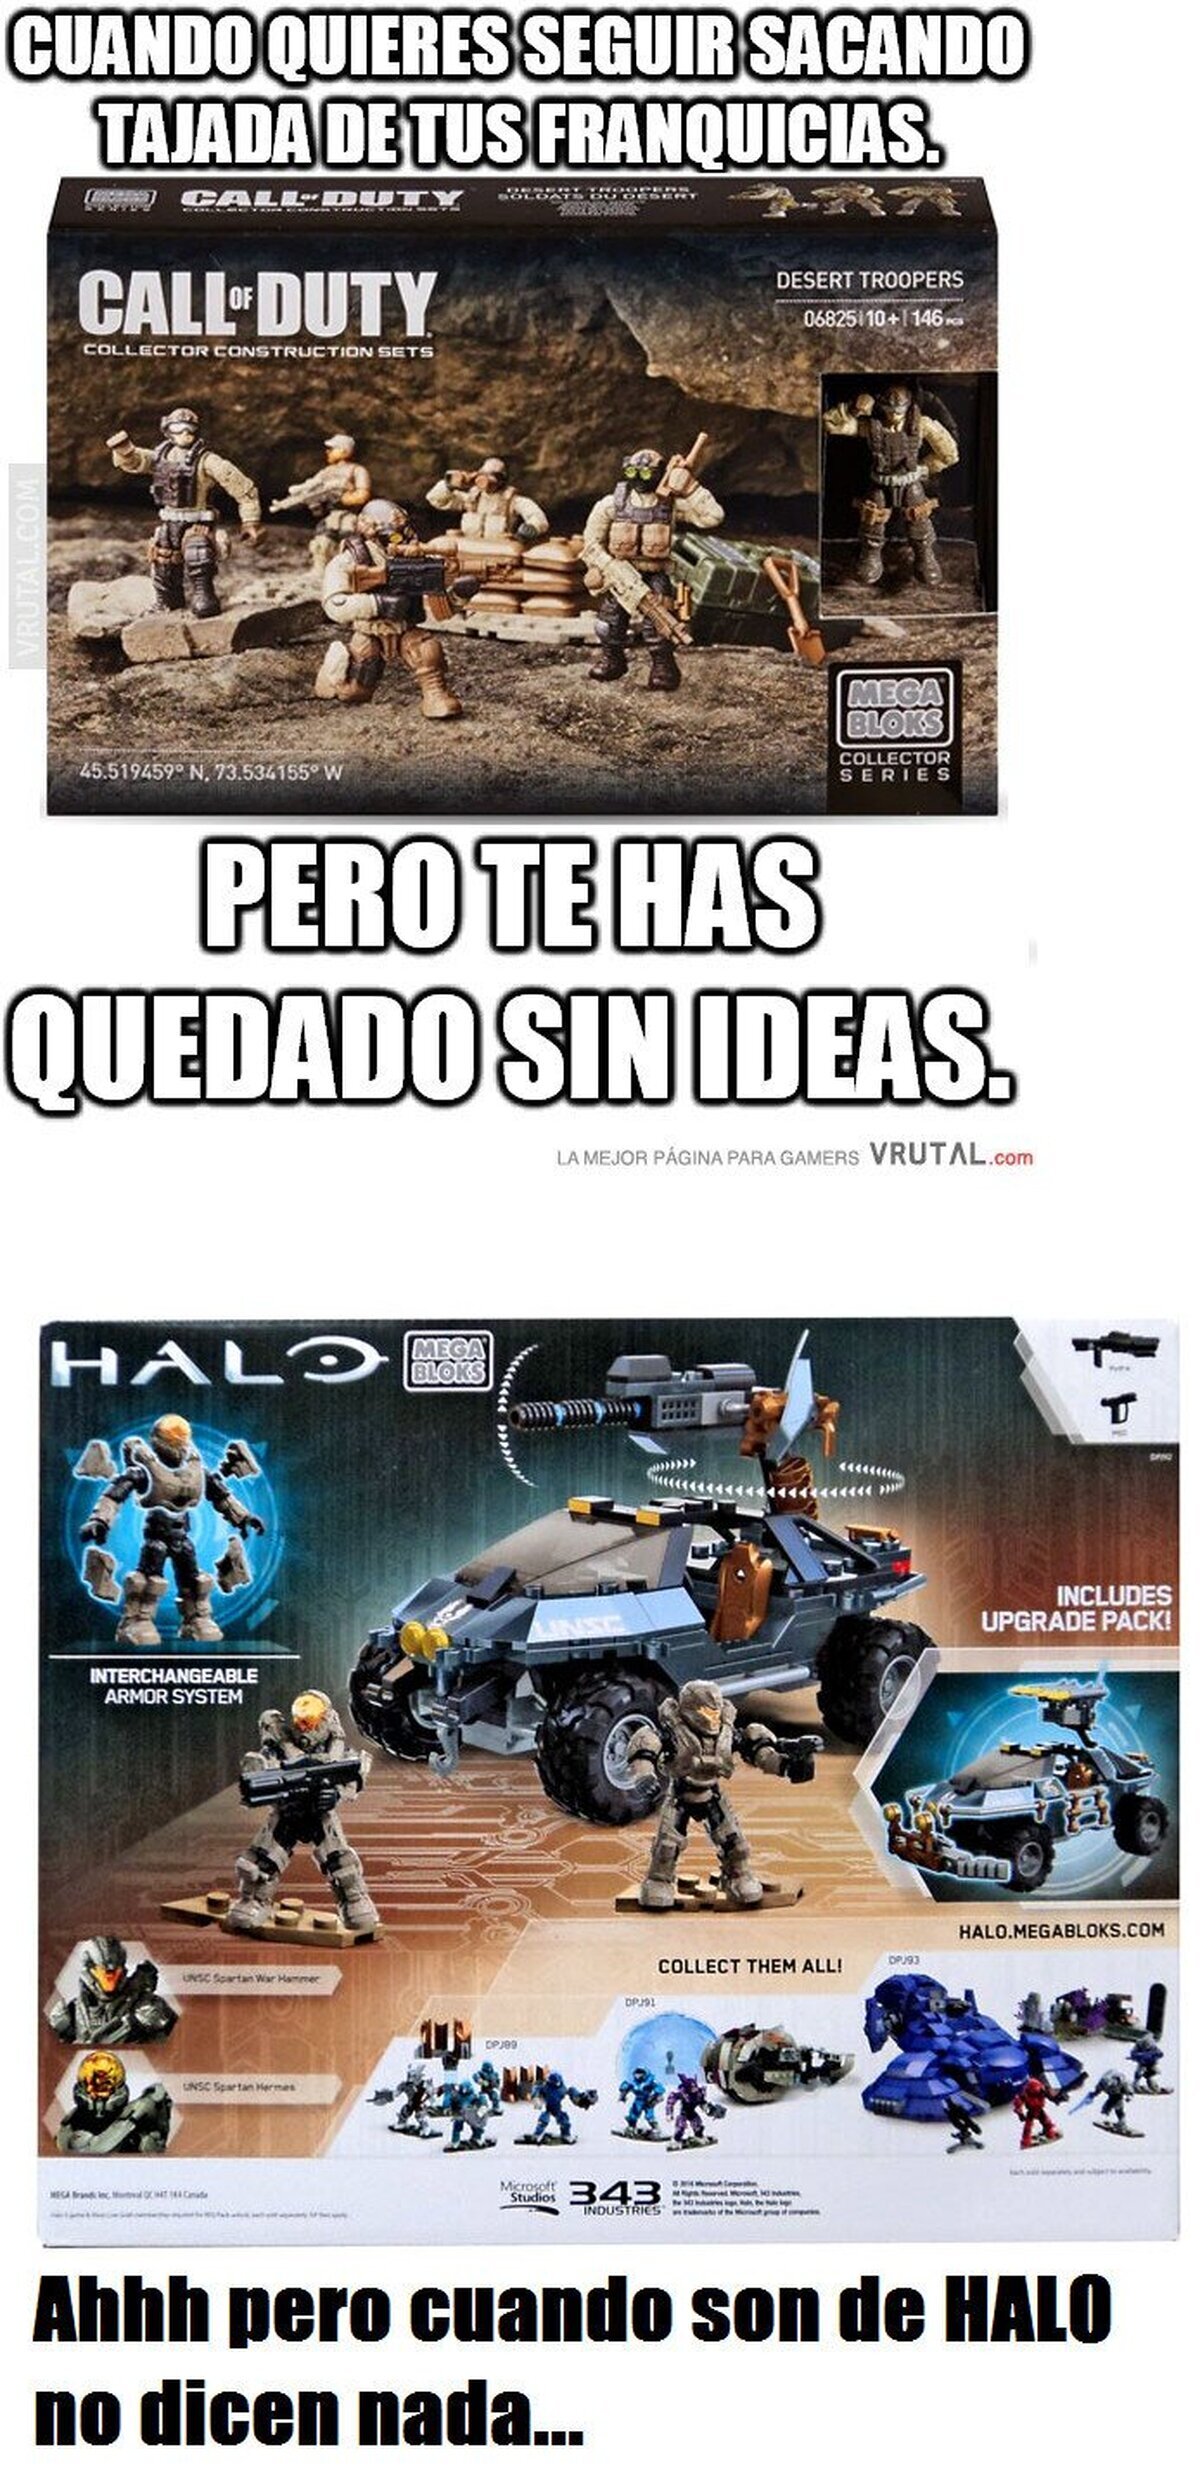 Pero cuando es Halo...